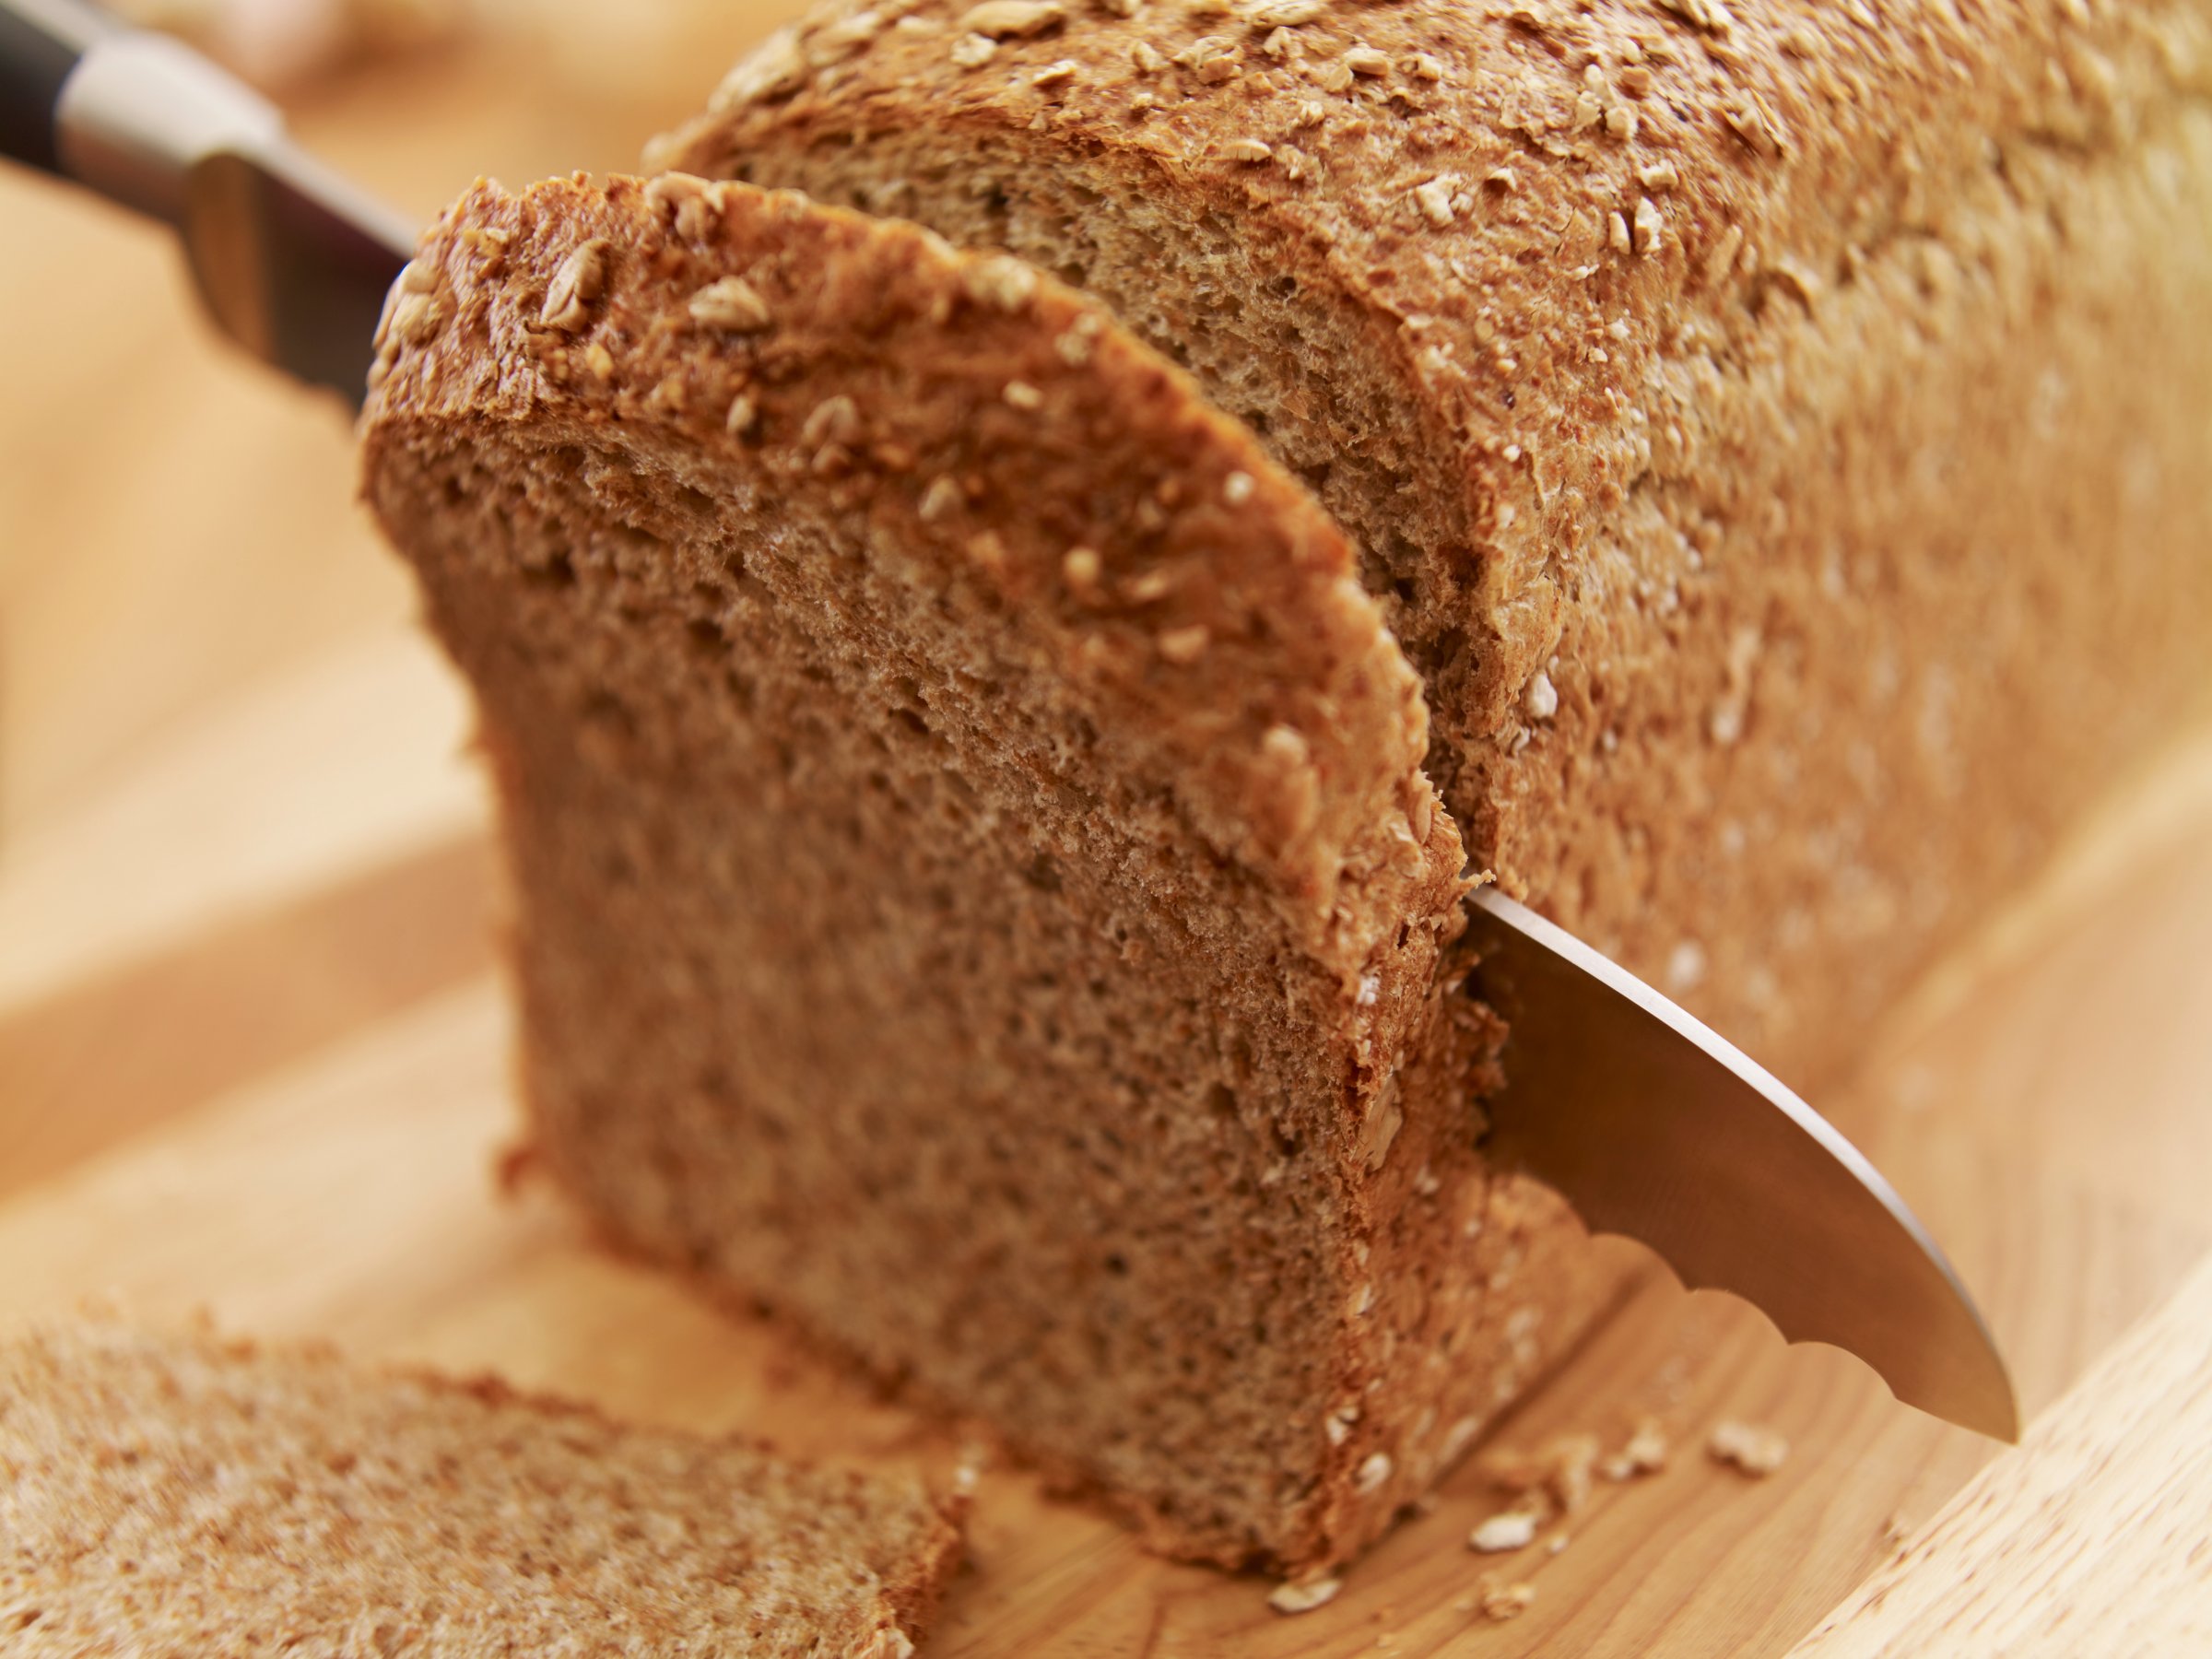 Knife slicing fresh bread loaf